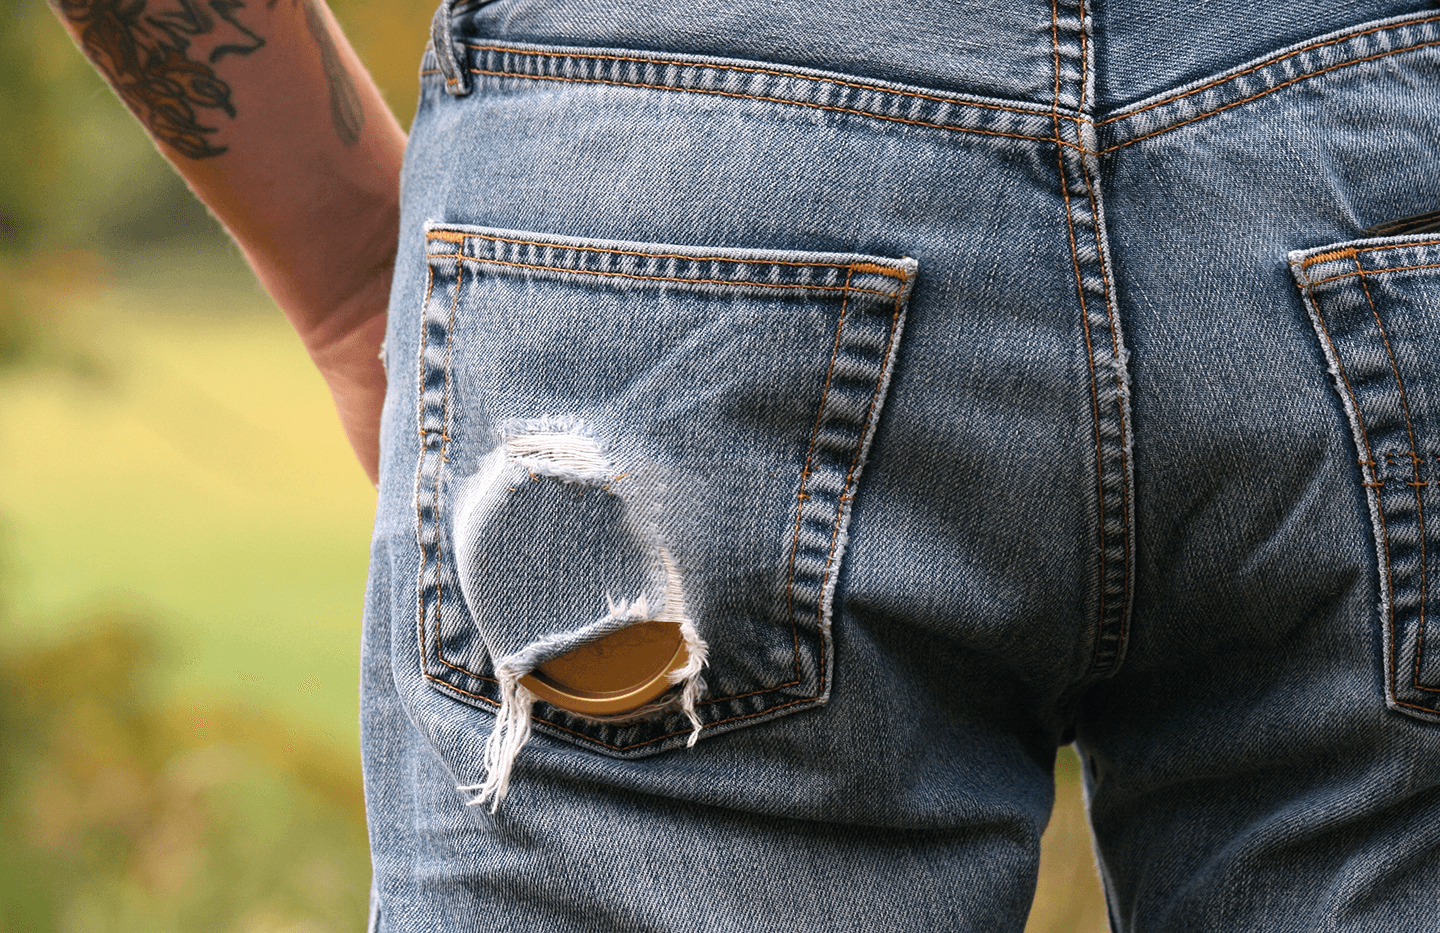 Snusburk i bakfickan på söndriga jeans